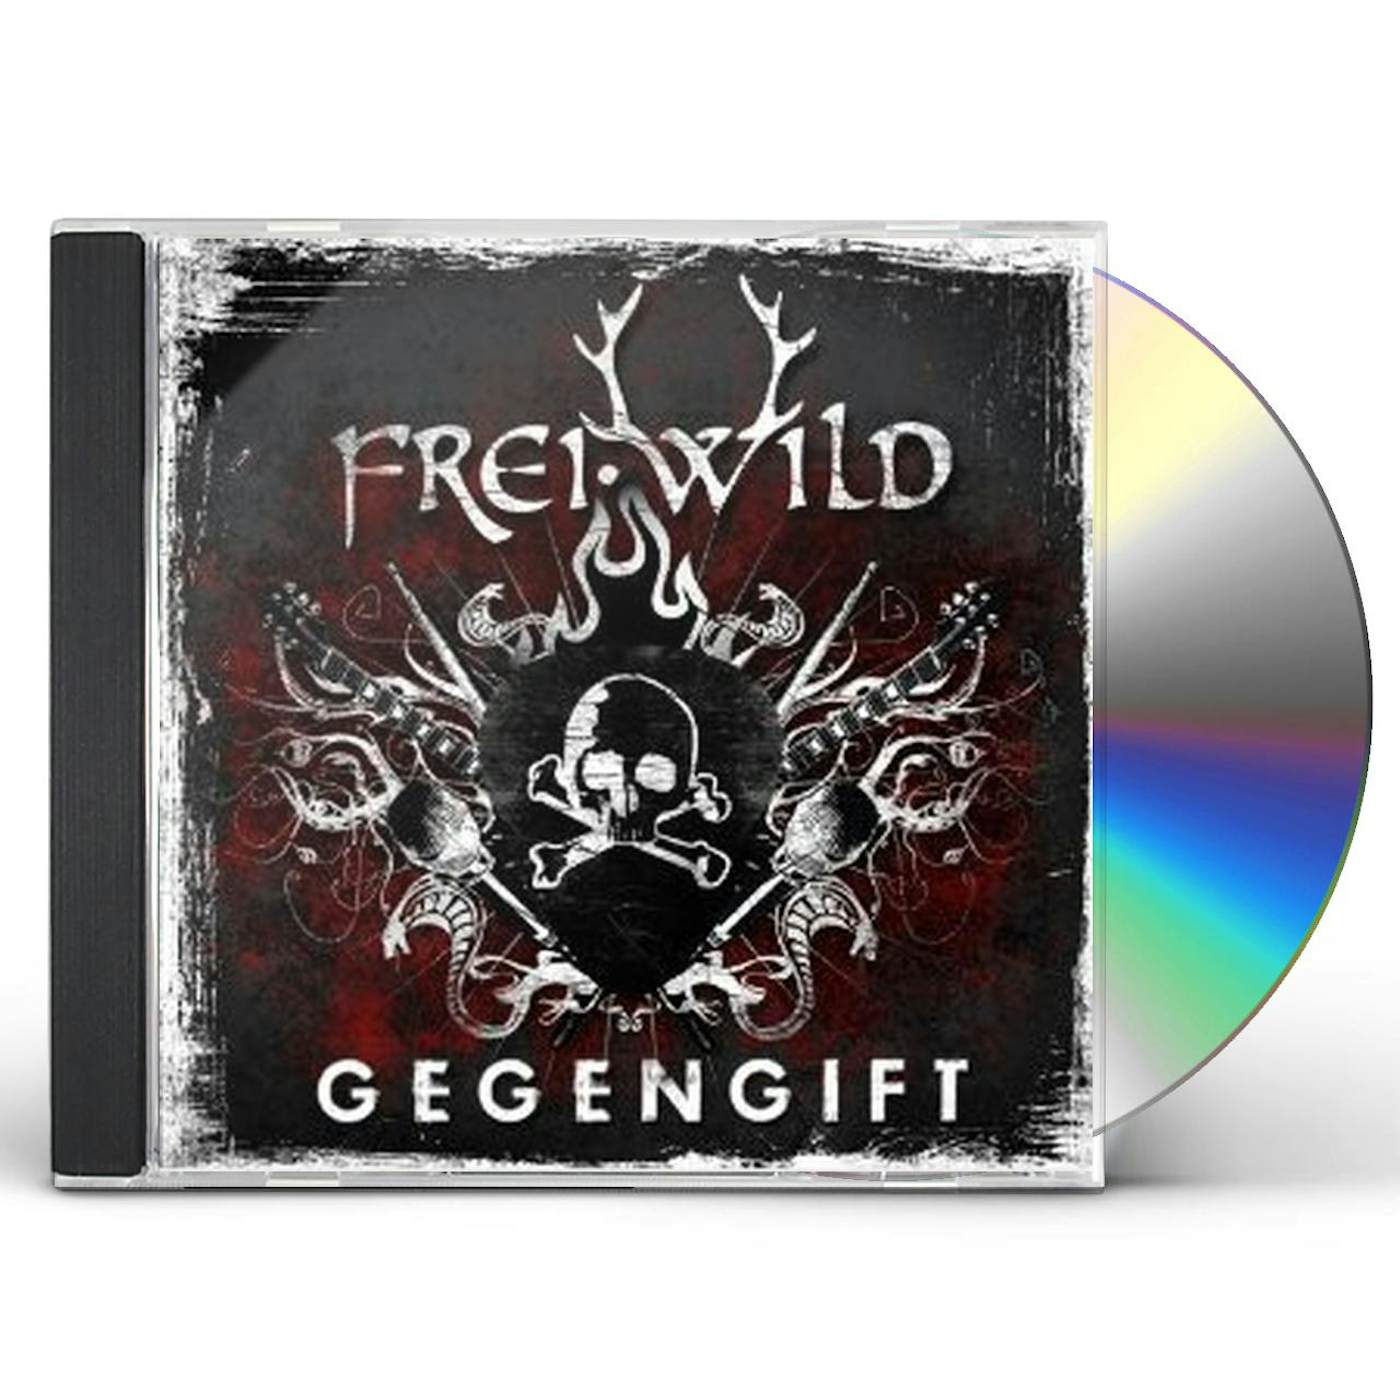 Frei.Wild GEGENGIFT CD